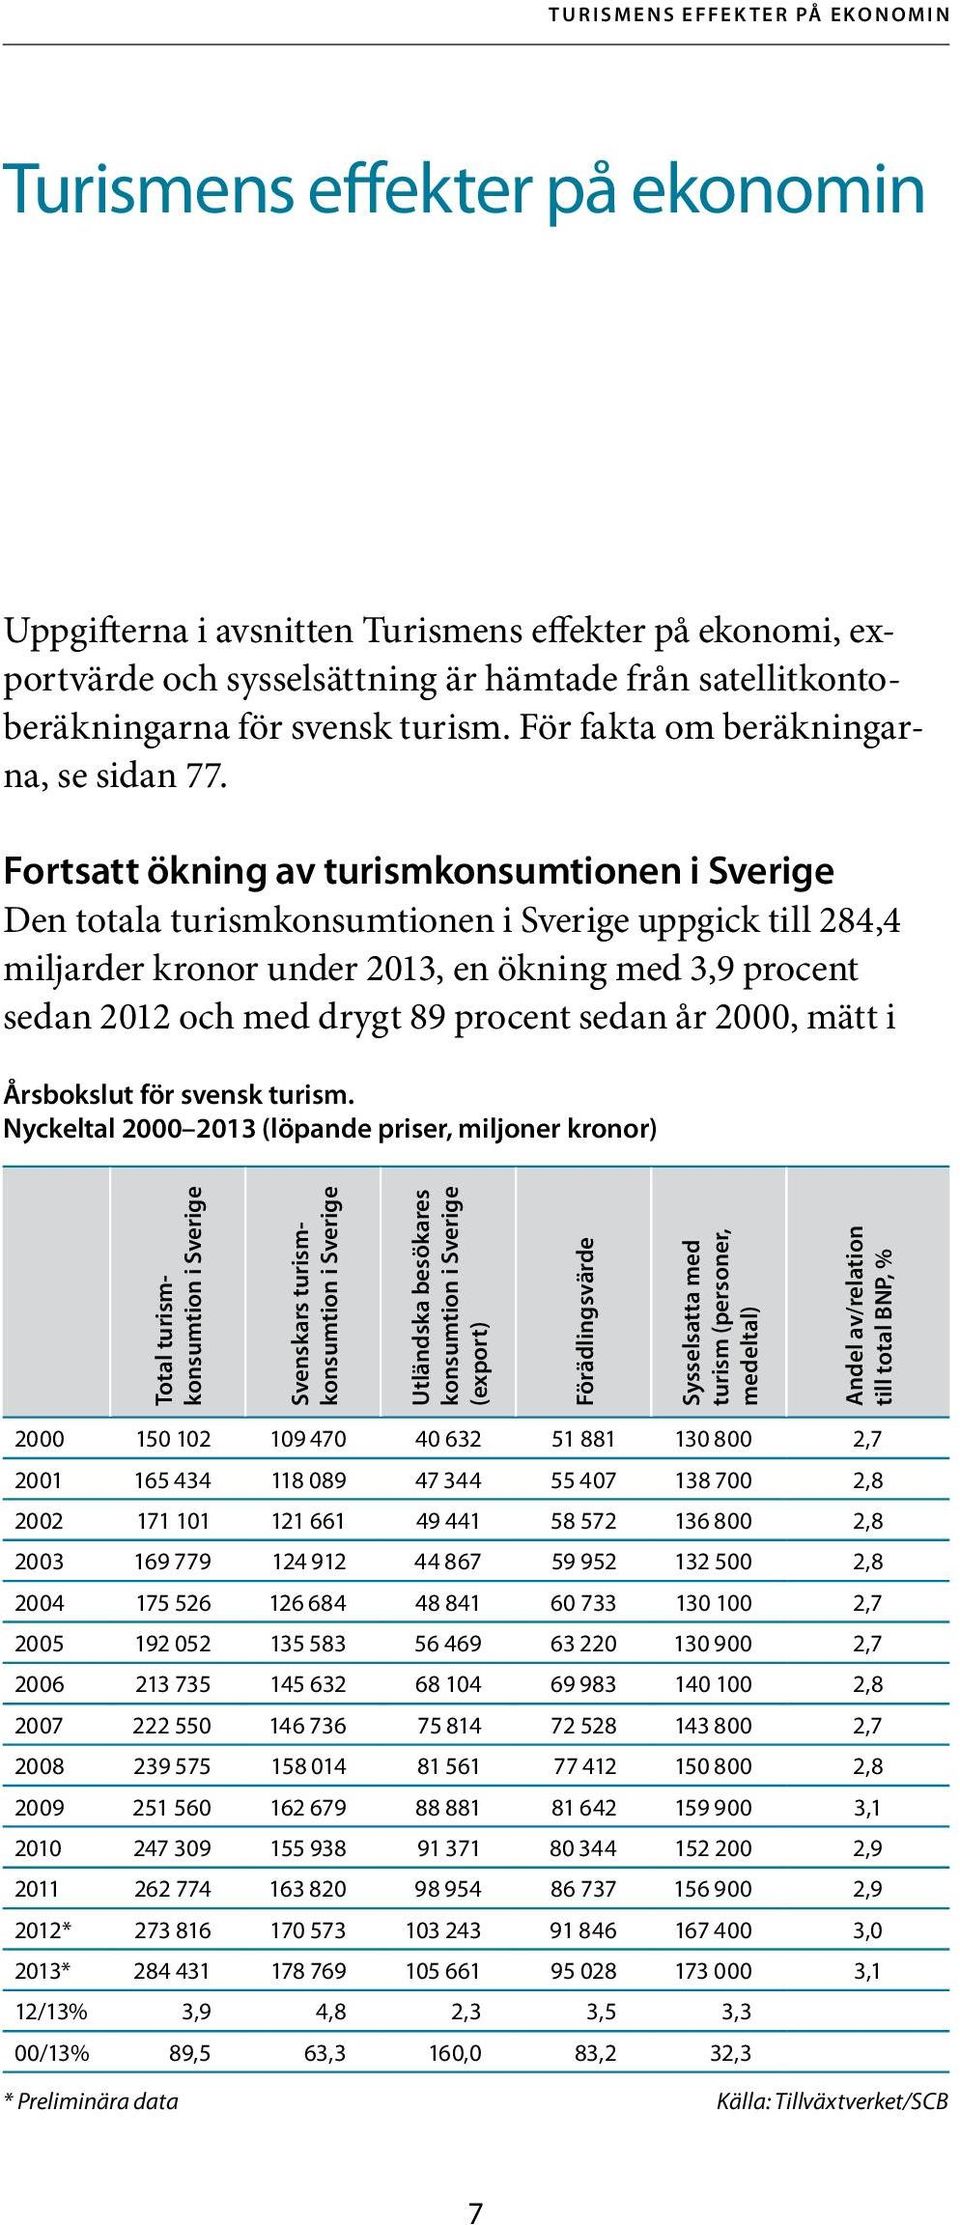 Fortsatt ökning av turismkonsumtionen i Sverige Den totala turismkonsumtionen i Sverige uppgick till 284,4 miljarder kronor under 2013, en ökning med 3,9 procent sedan 2012 och med drygt 89 procent